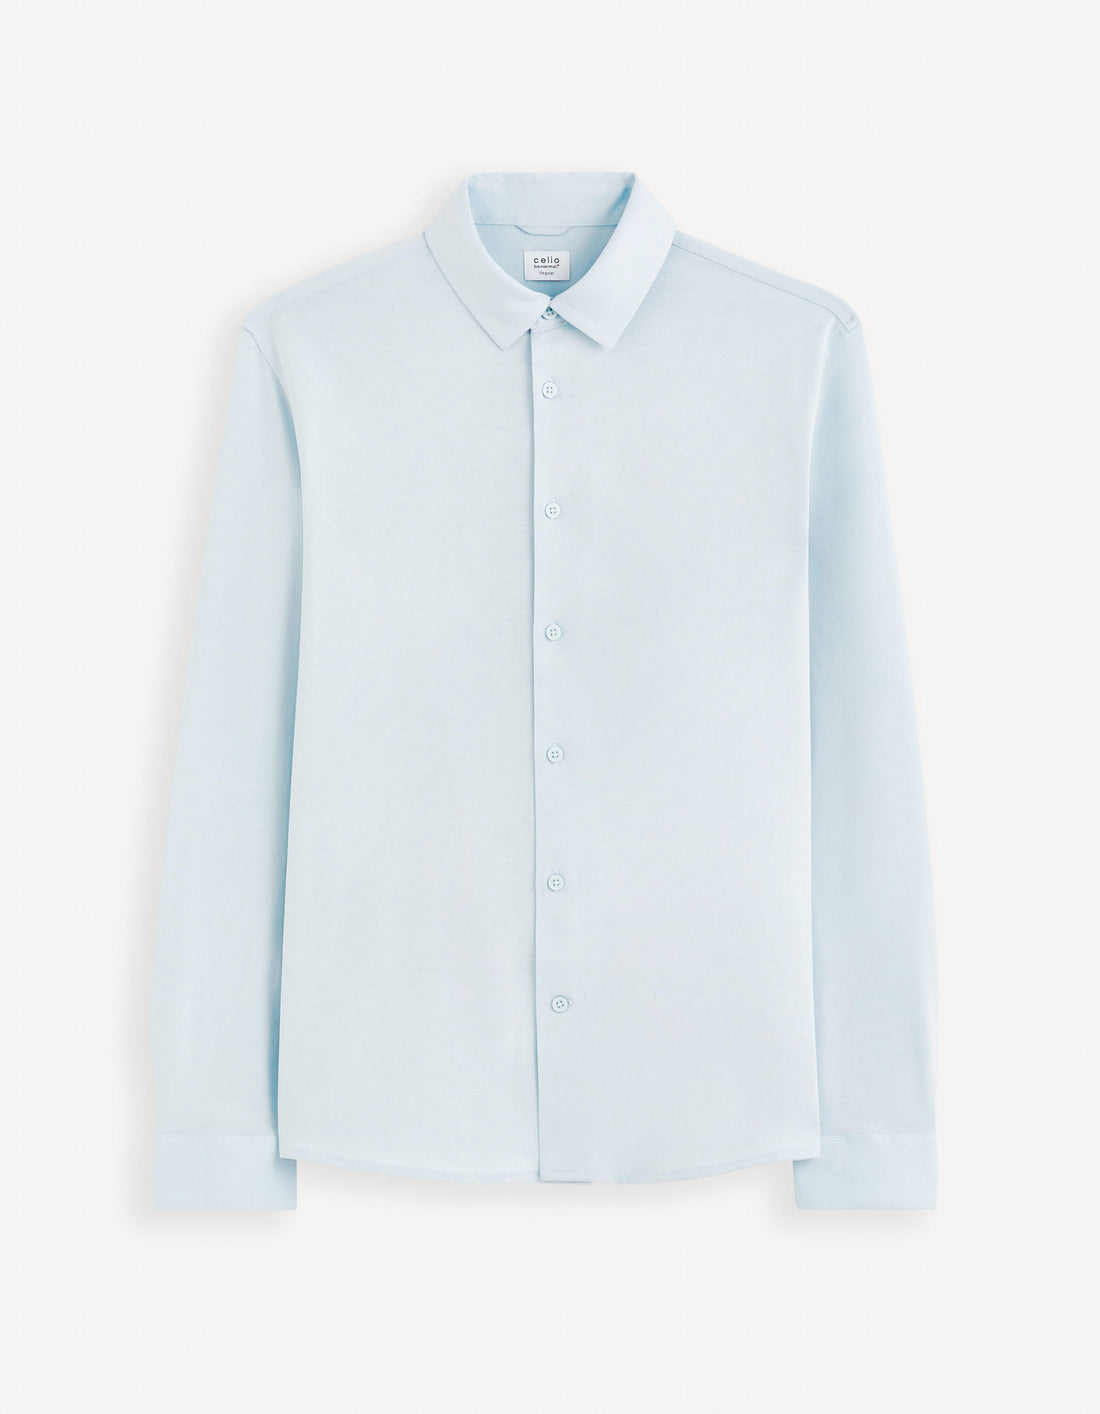 Modern Cut Shirt 100% Cotton_VAJERSEY_LIGHT BLUE_02